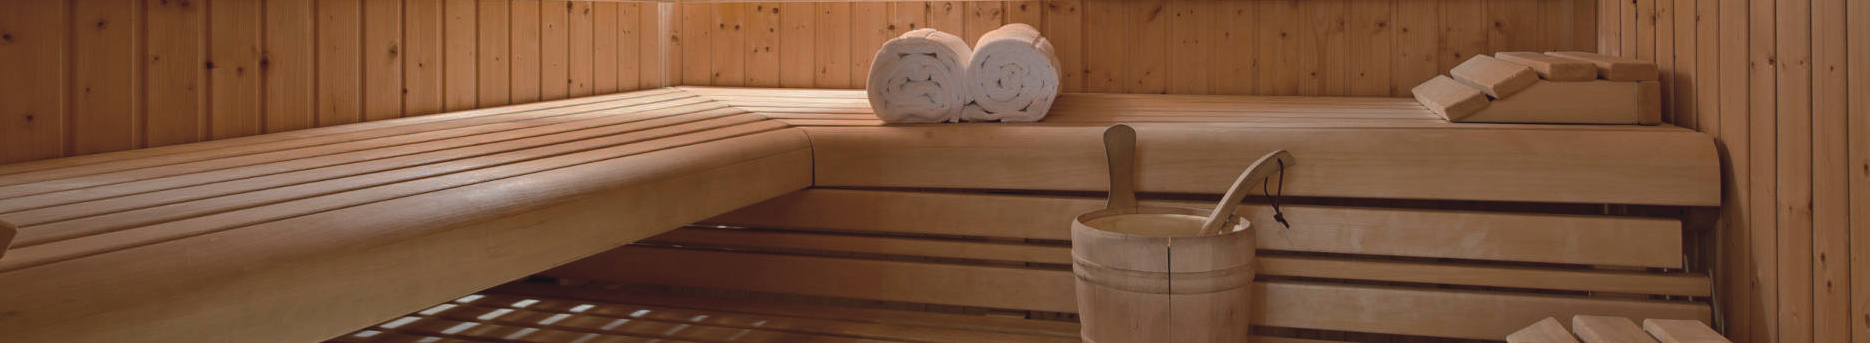 wellness sauna